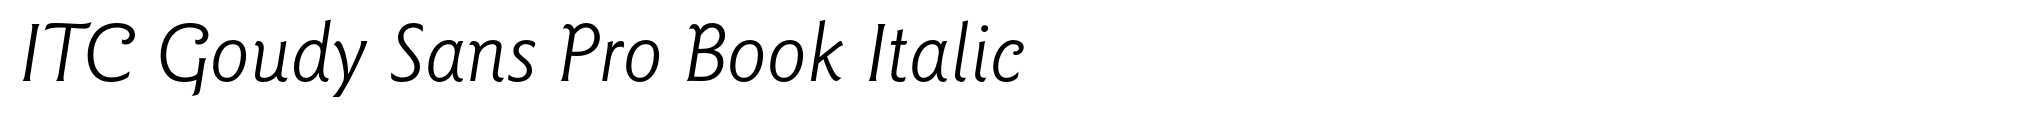 ITC Goudy Sans Pro Book Italic image